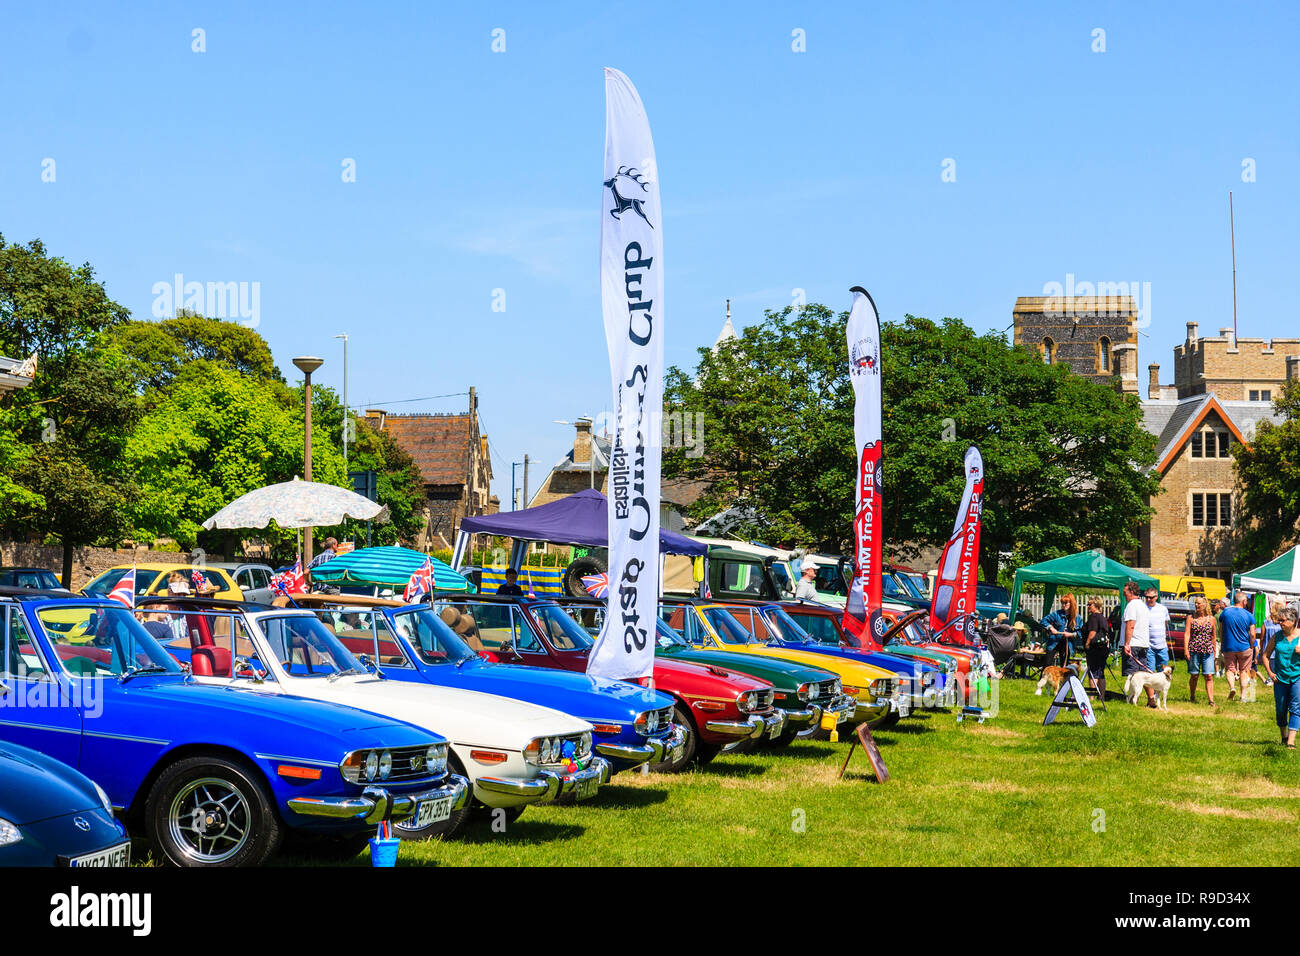 Schaufel und Spaten Classic Car Show auf Ramsgate Strandpromenade. Reihe von sieben vintage Triumph Bühne Autos, in verschiedenen Farben. Strahlender Sonnenschein, blauer Himmel. Stockfoto